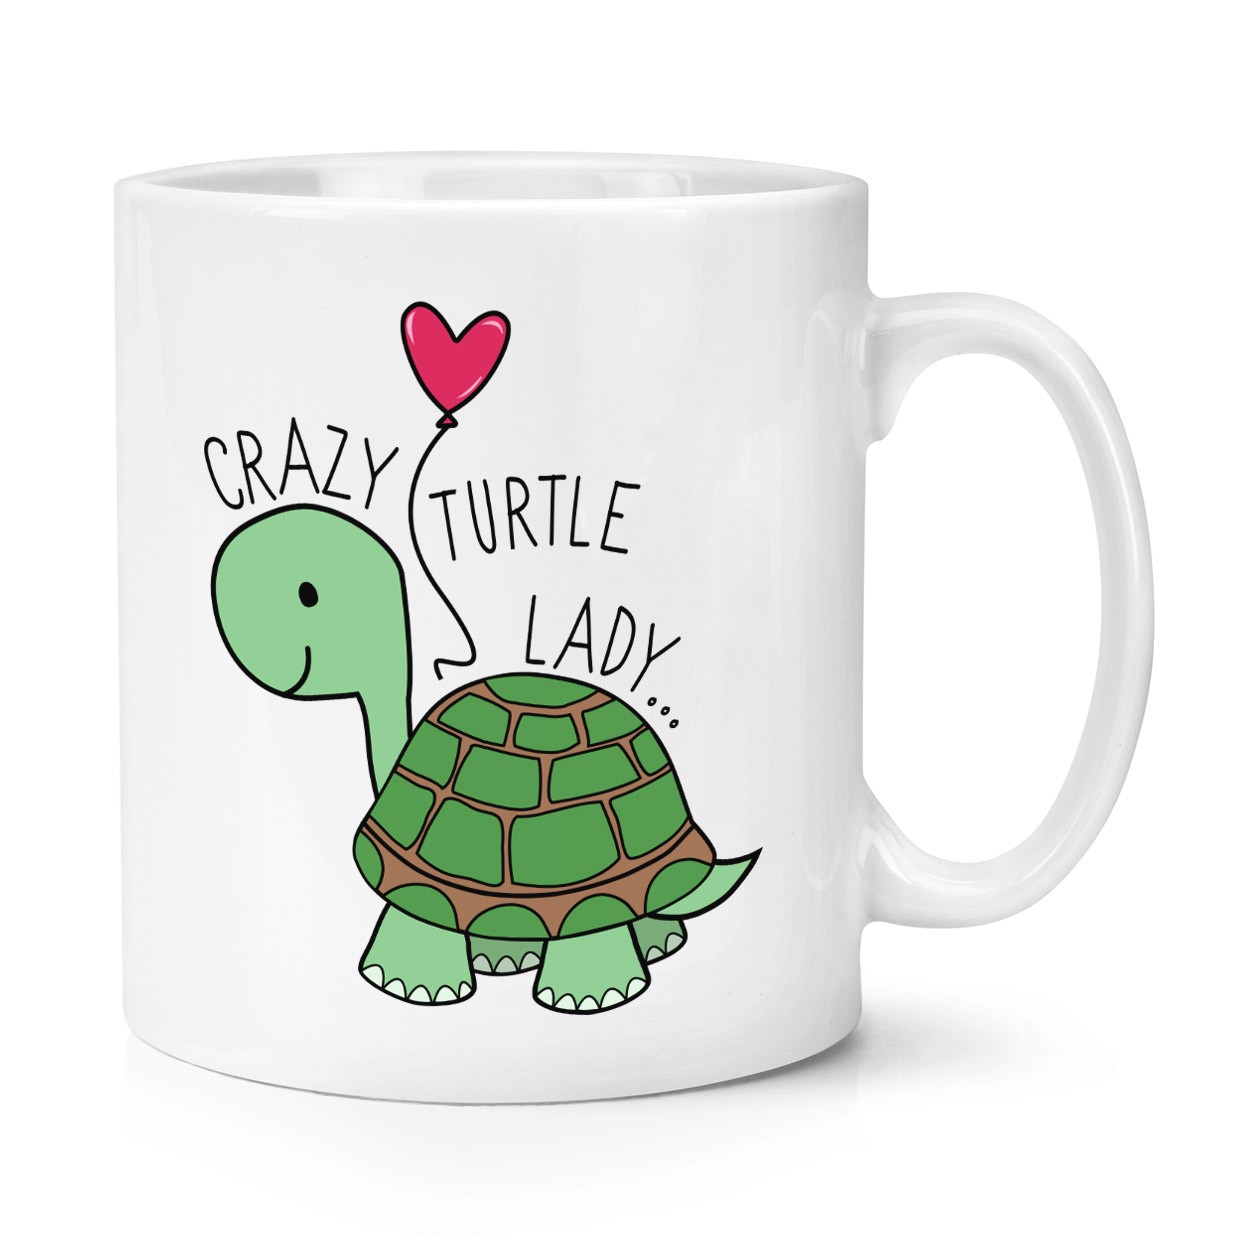 Crazy Turtle Lady 10oz Mug Cup